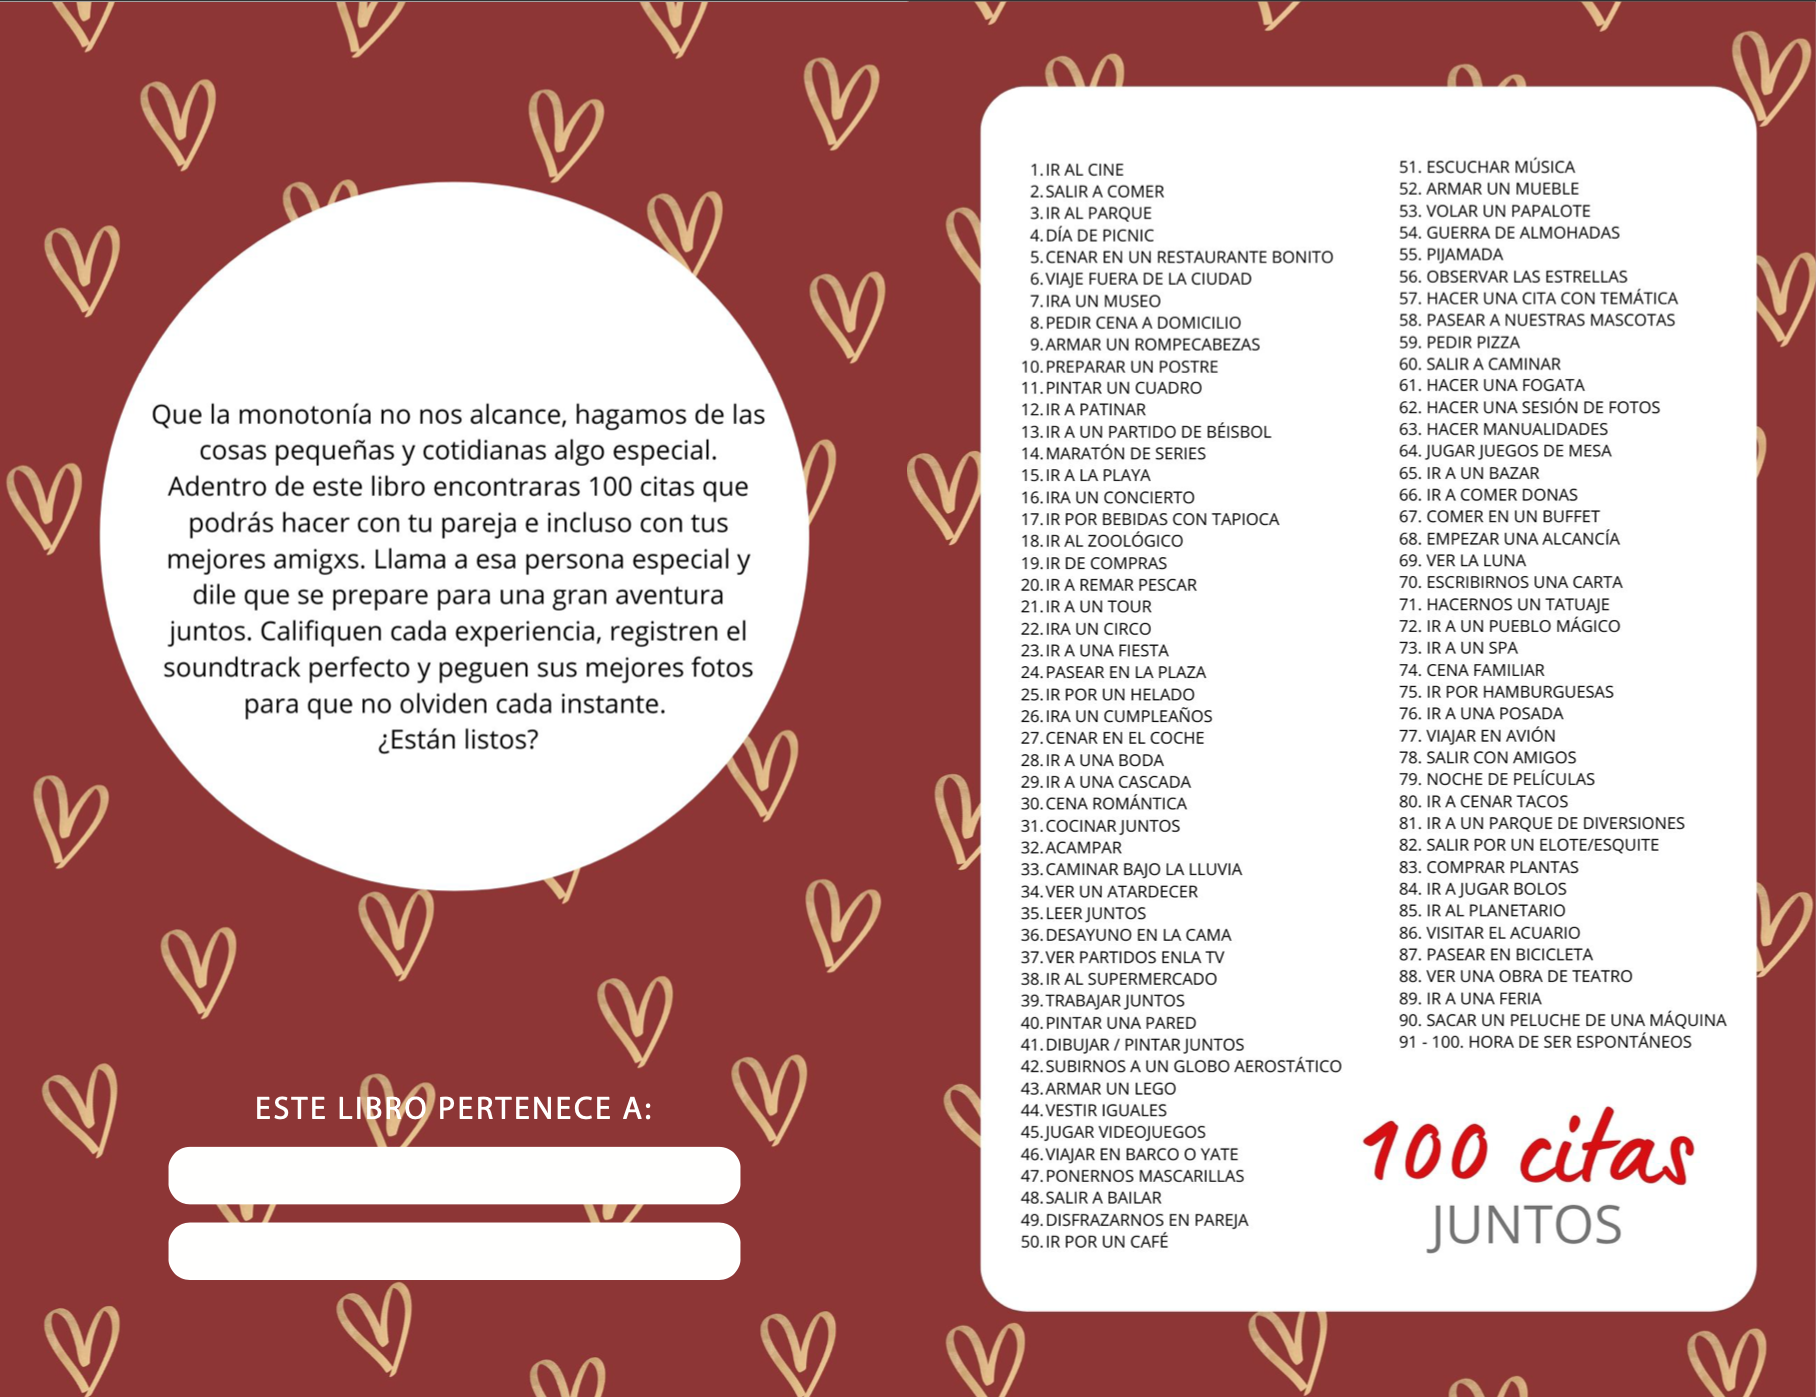 100 Citas Juntos - Edición Digital